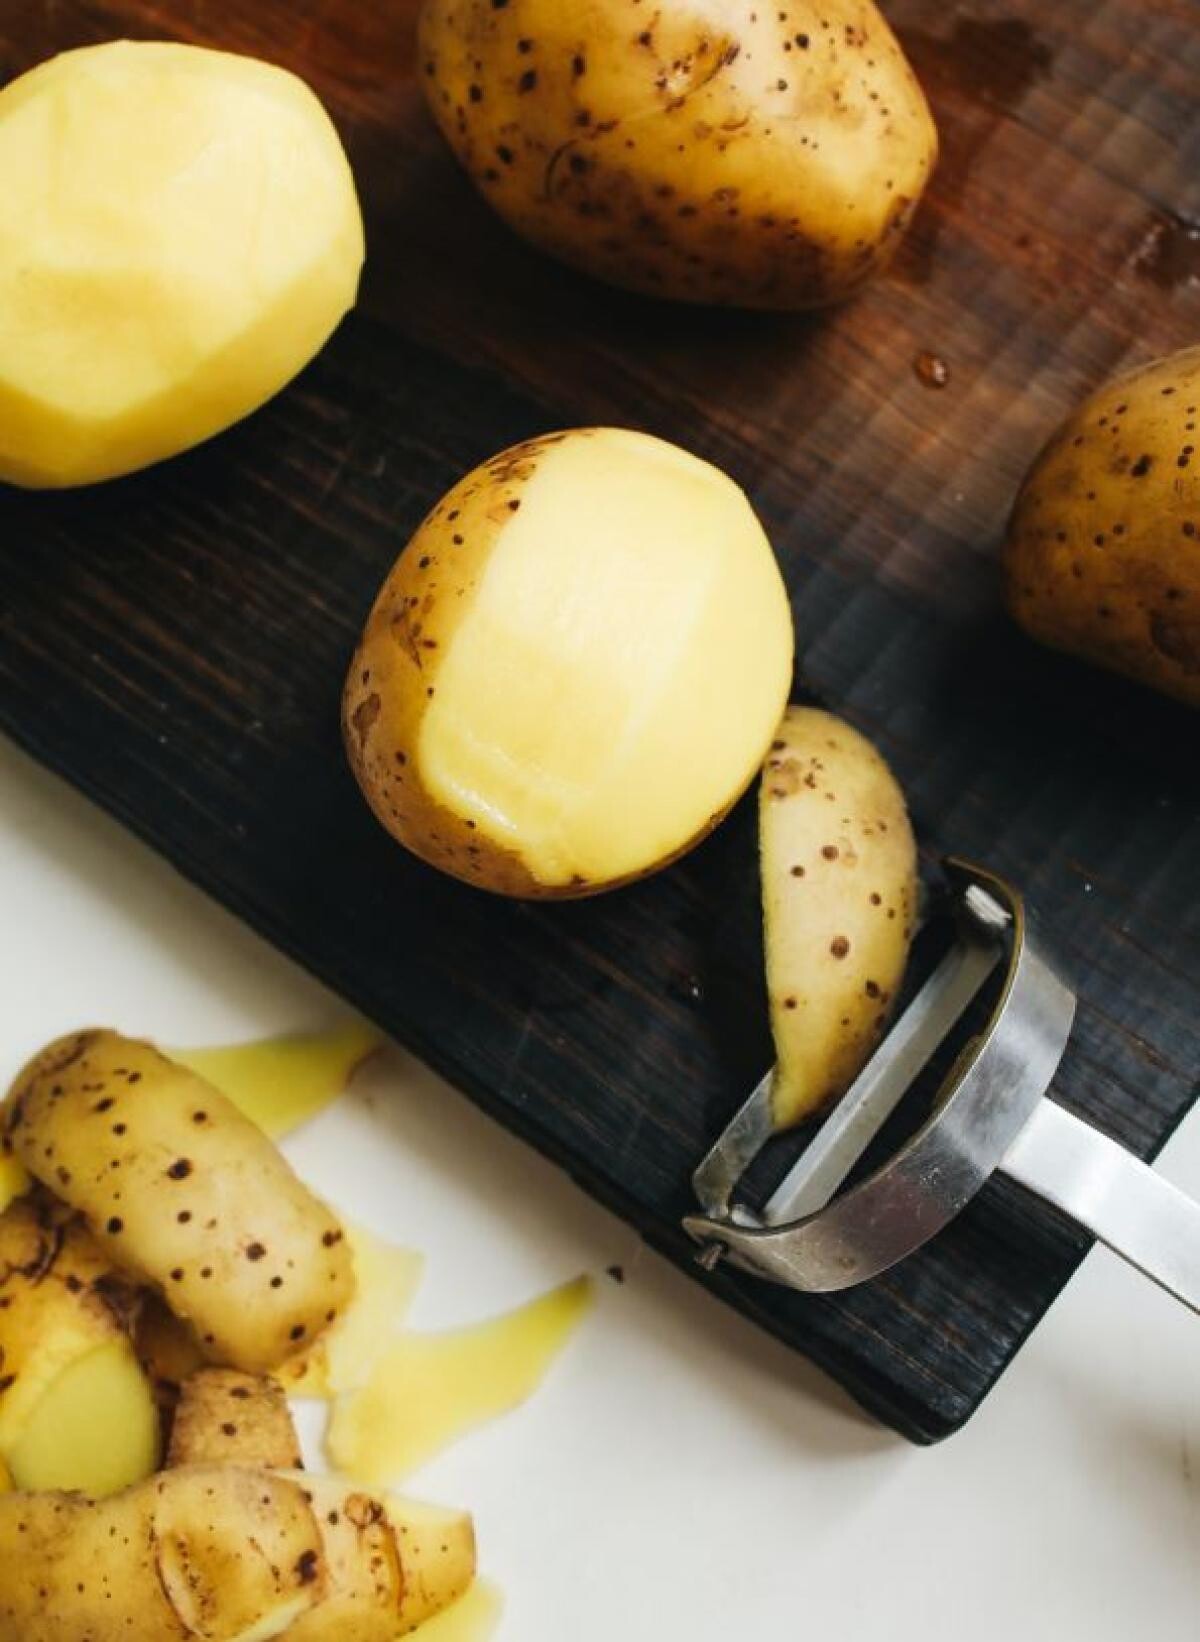 Cartofi și dovlecei la cuptor - un preparat super gustos pentru o cină cu prietenii. Sursa - Pexels